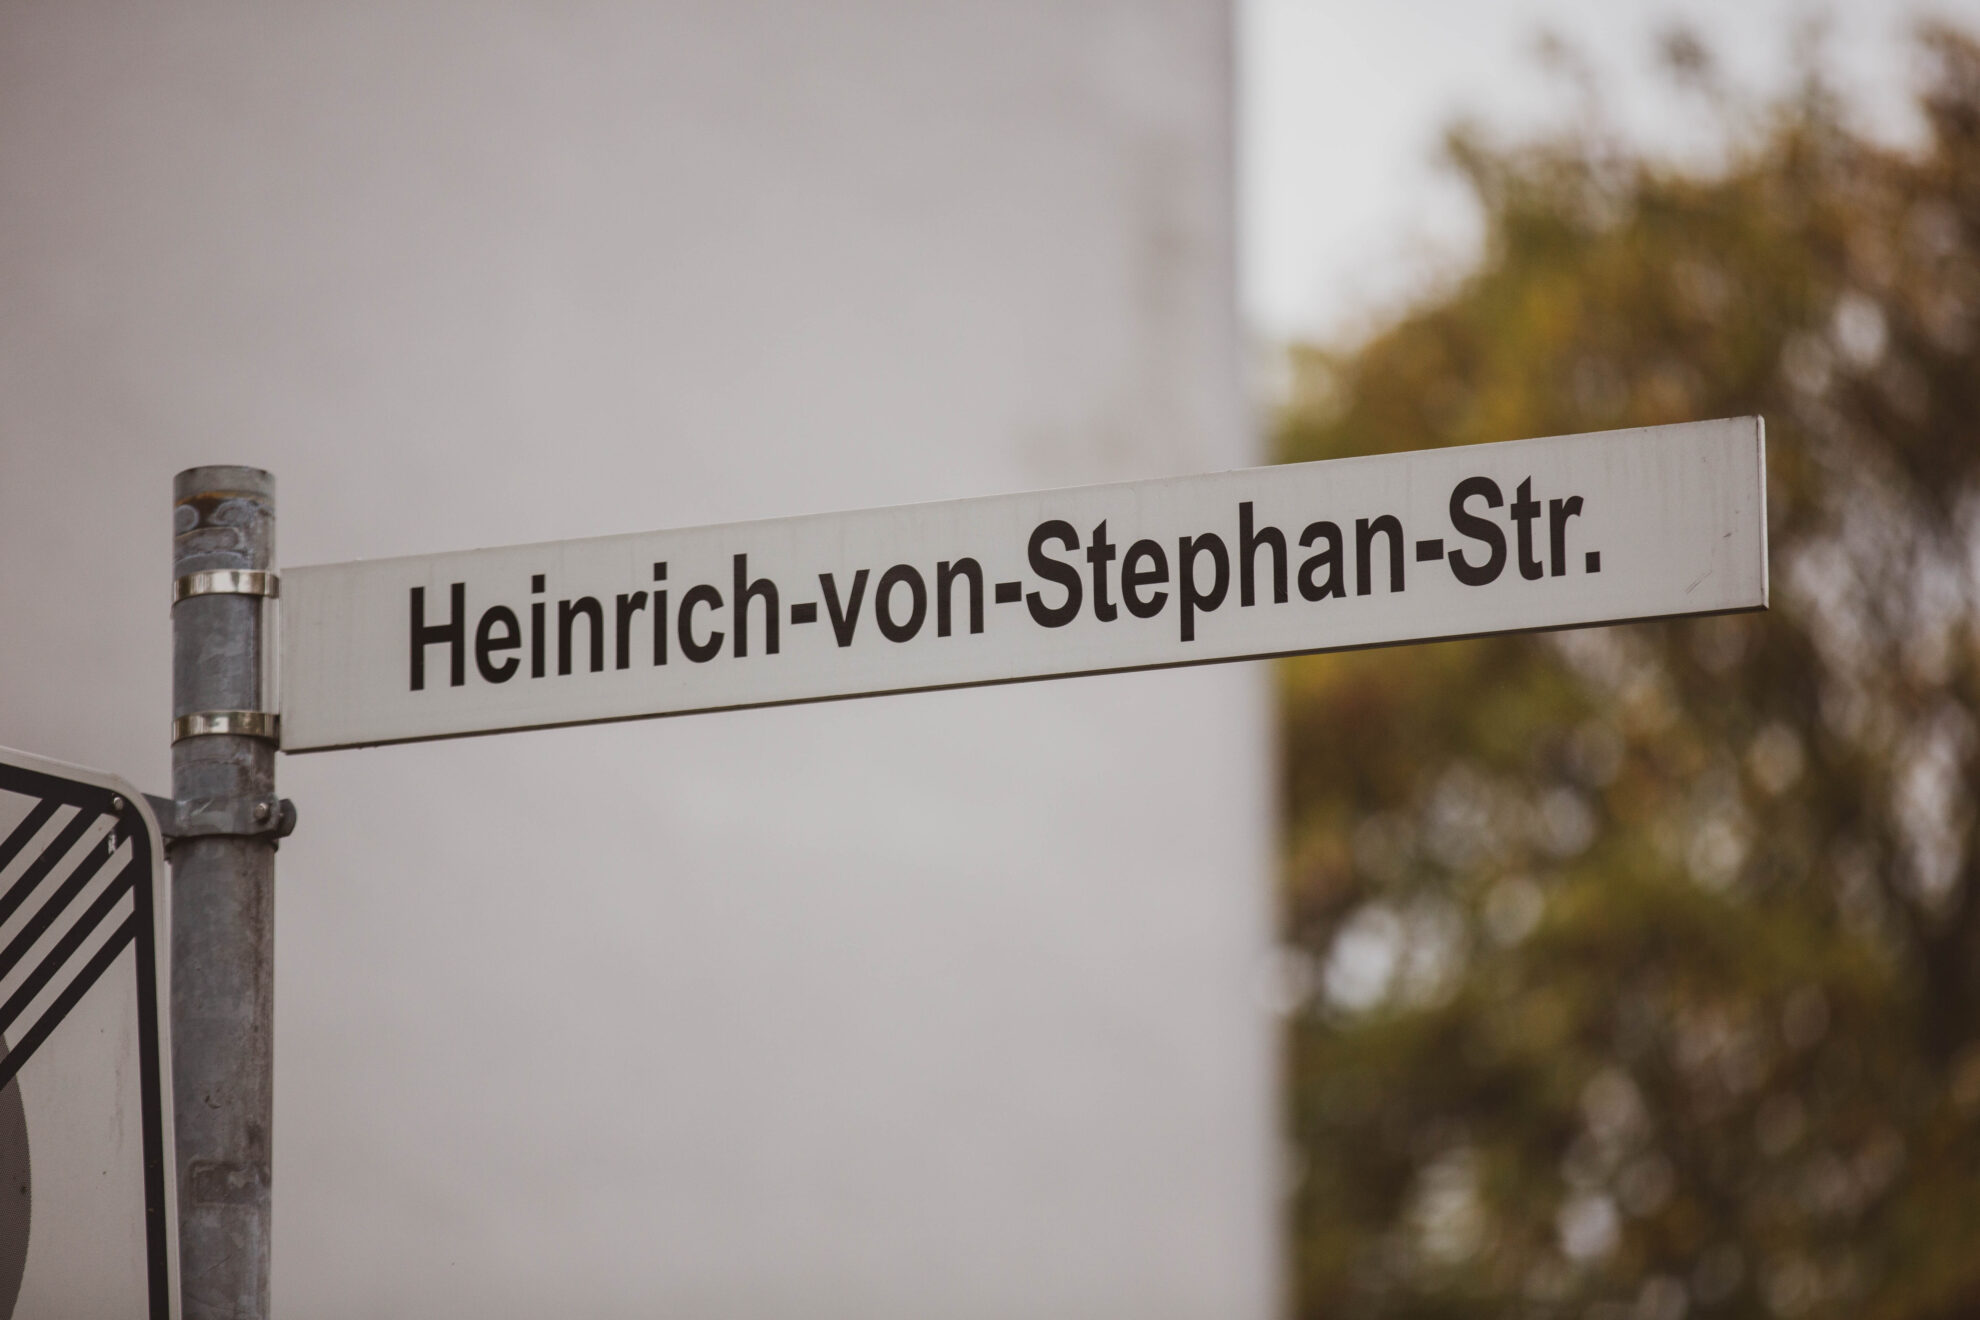 Heinrich-von-Stephan-Strasse